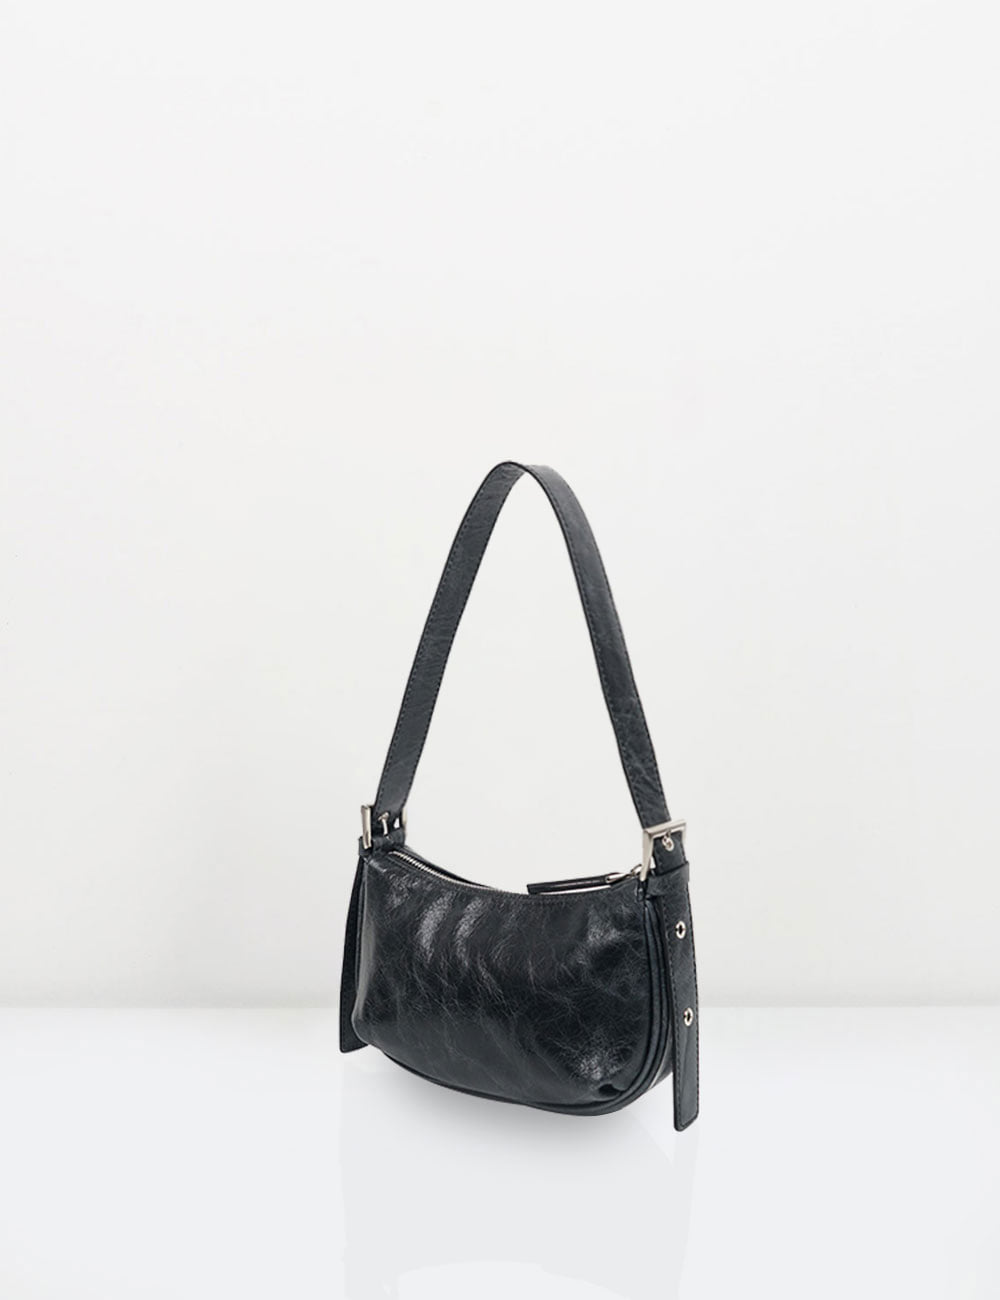 Milli bag / black (sold out)